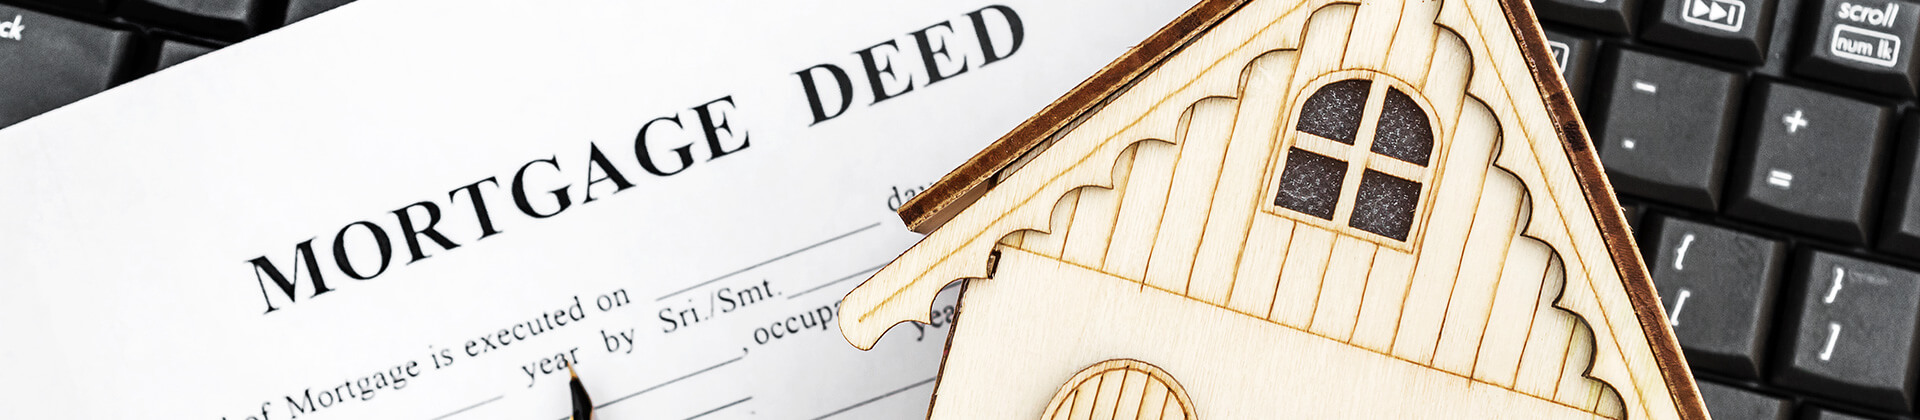 Mortgage deed paperwork